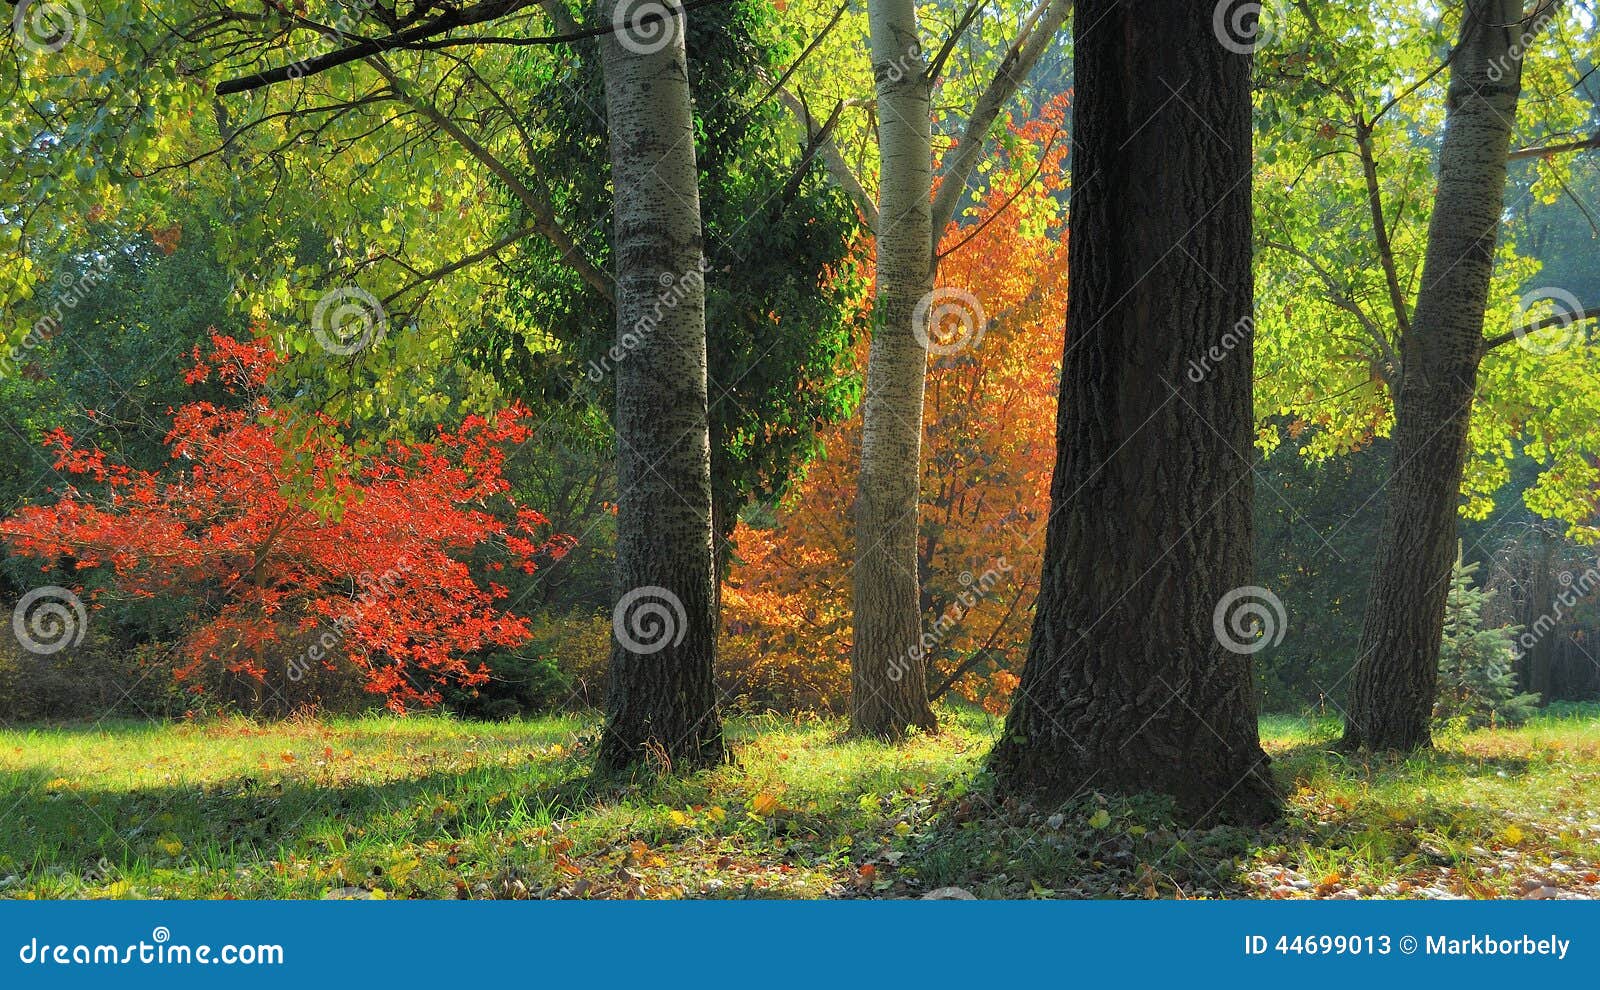 early fall foliage autumn trees